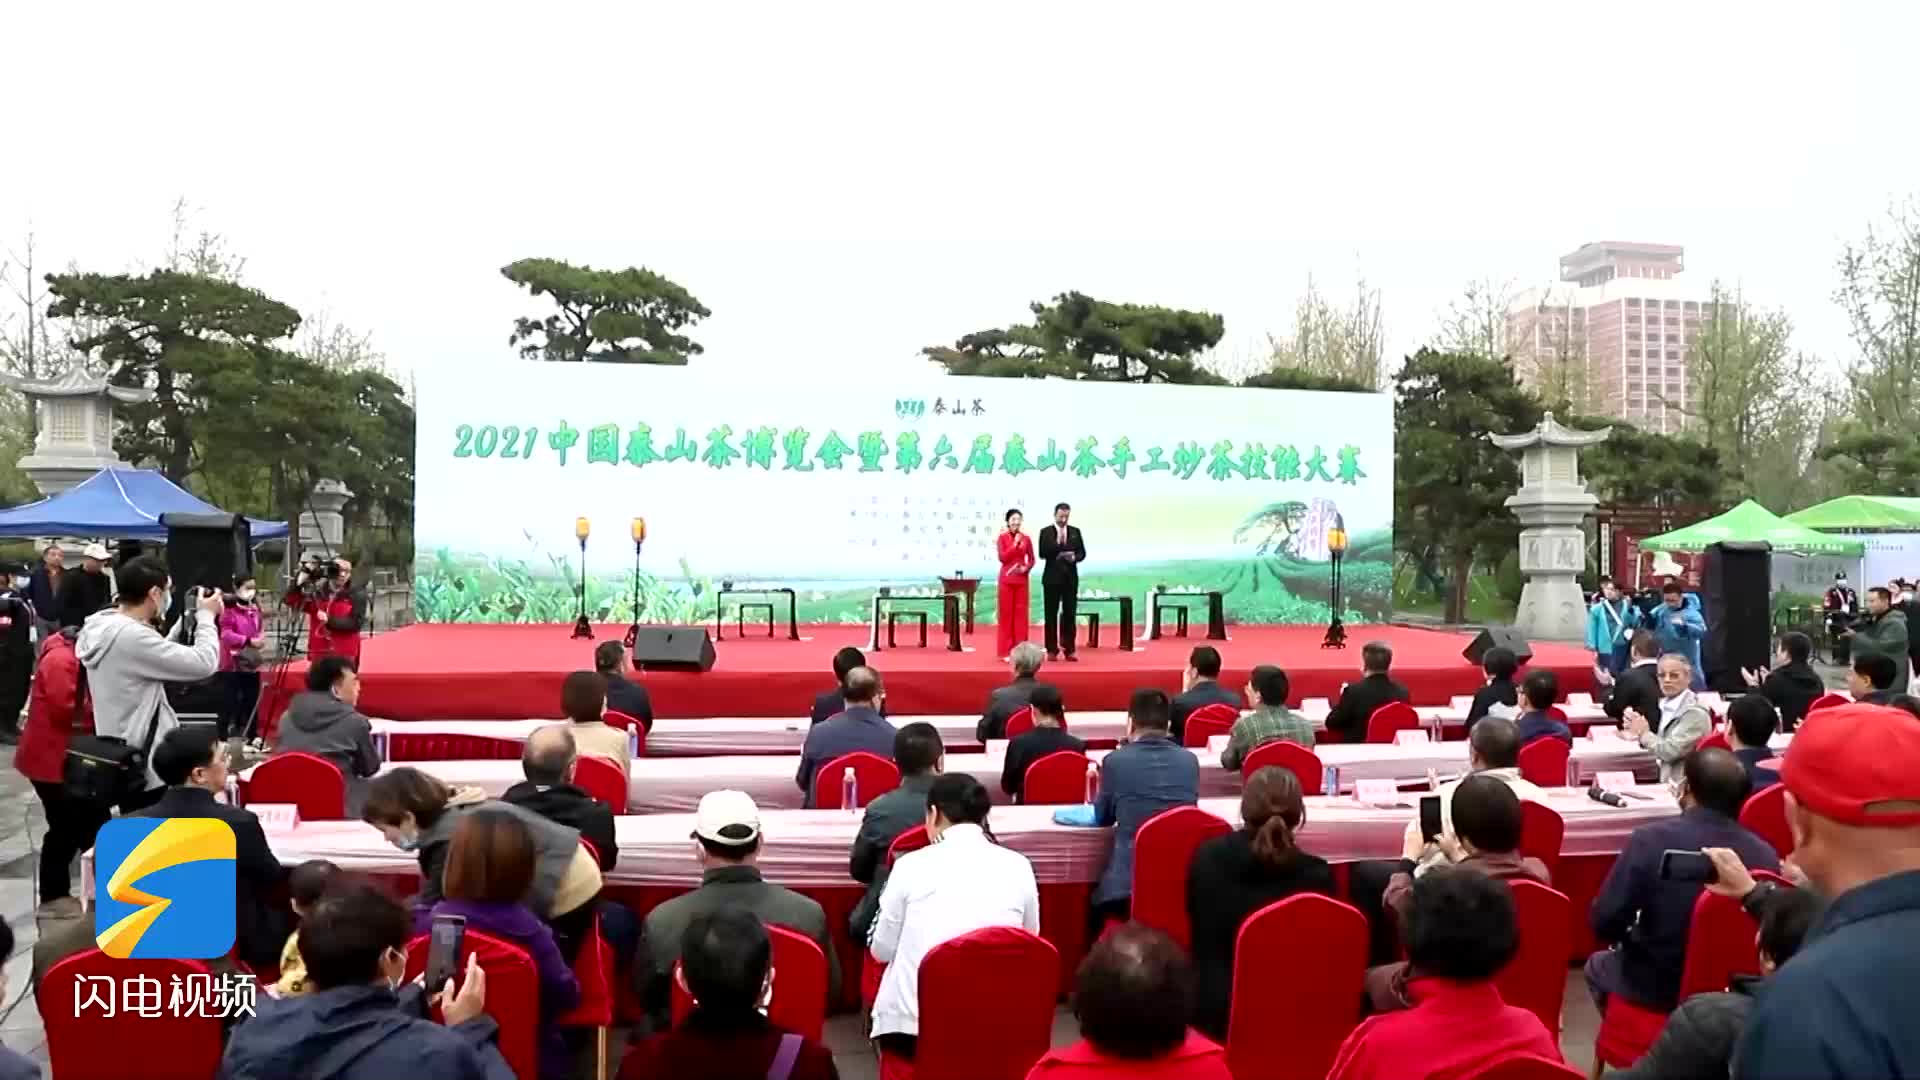 2021中国泰山茶博览会暨第六届泰山茶手工炒茶技能大赛举行